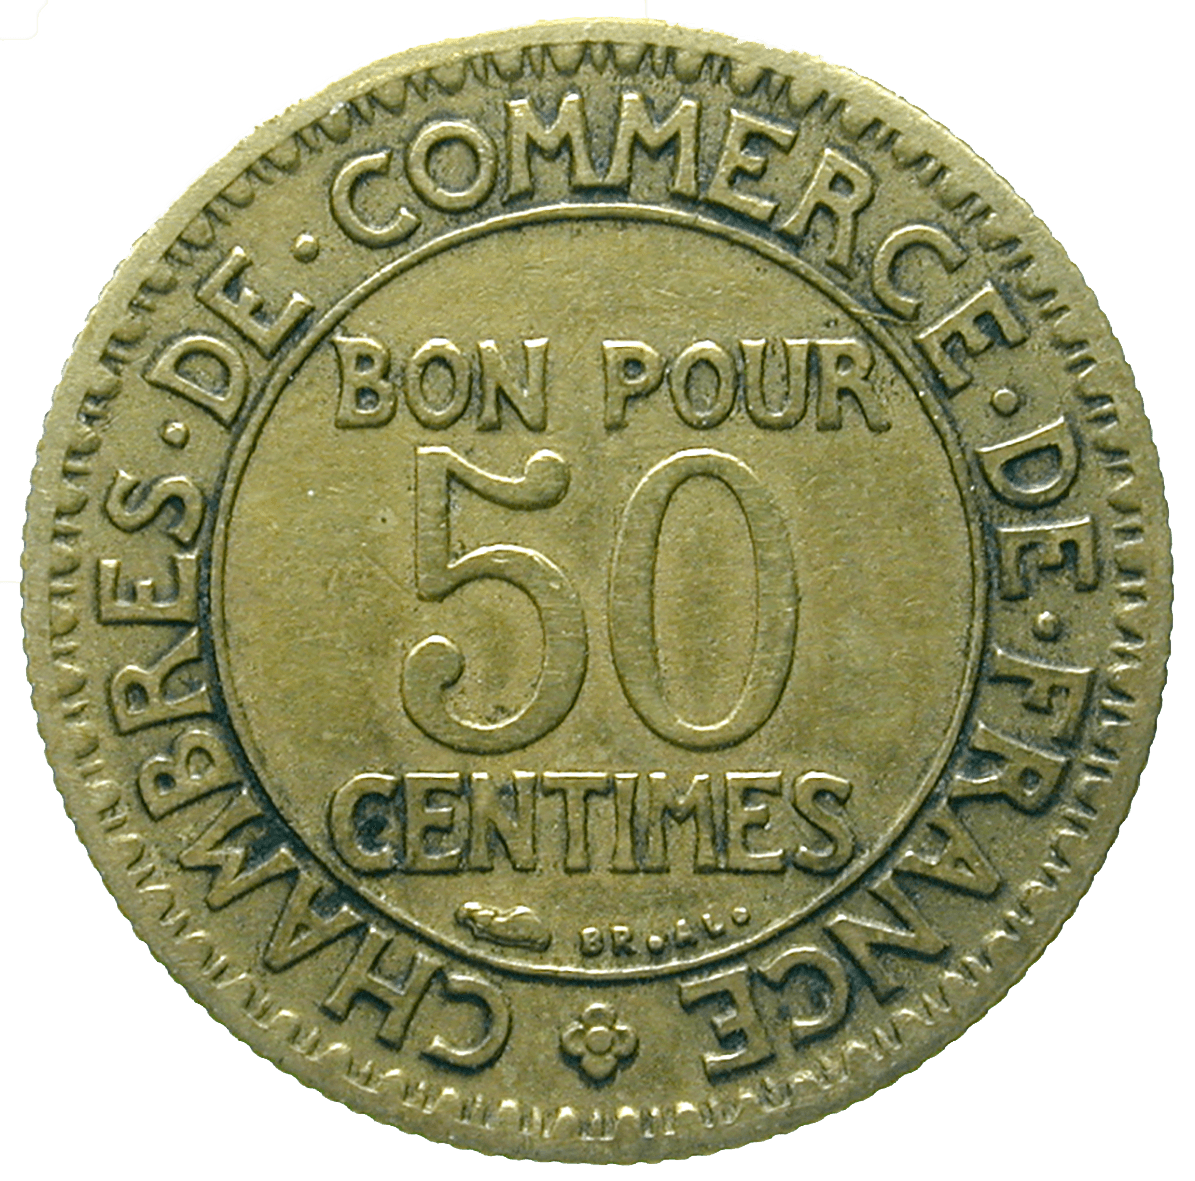 Republic of France, Chambres de Commerce de France, Bon pour 50 Centimes 1923 (reverse)